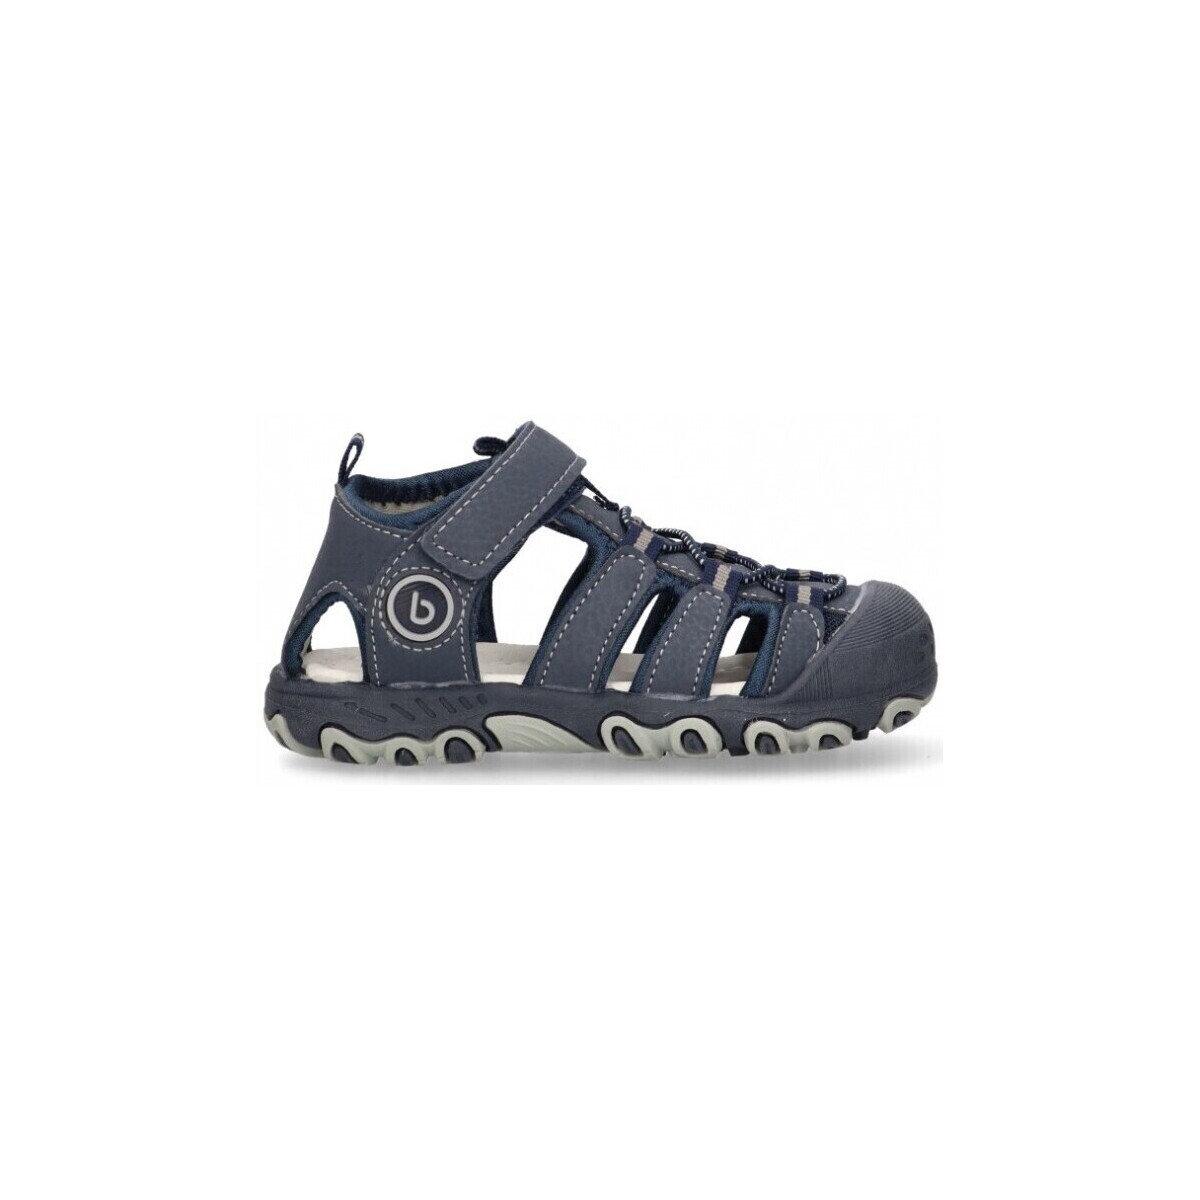 Pantofi Băieți Sandale Luna Kids 68995 albastru